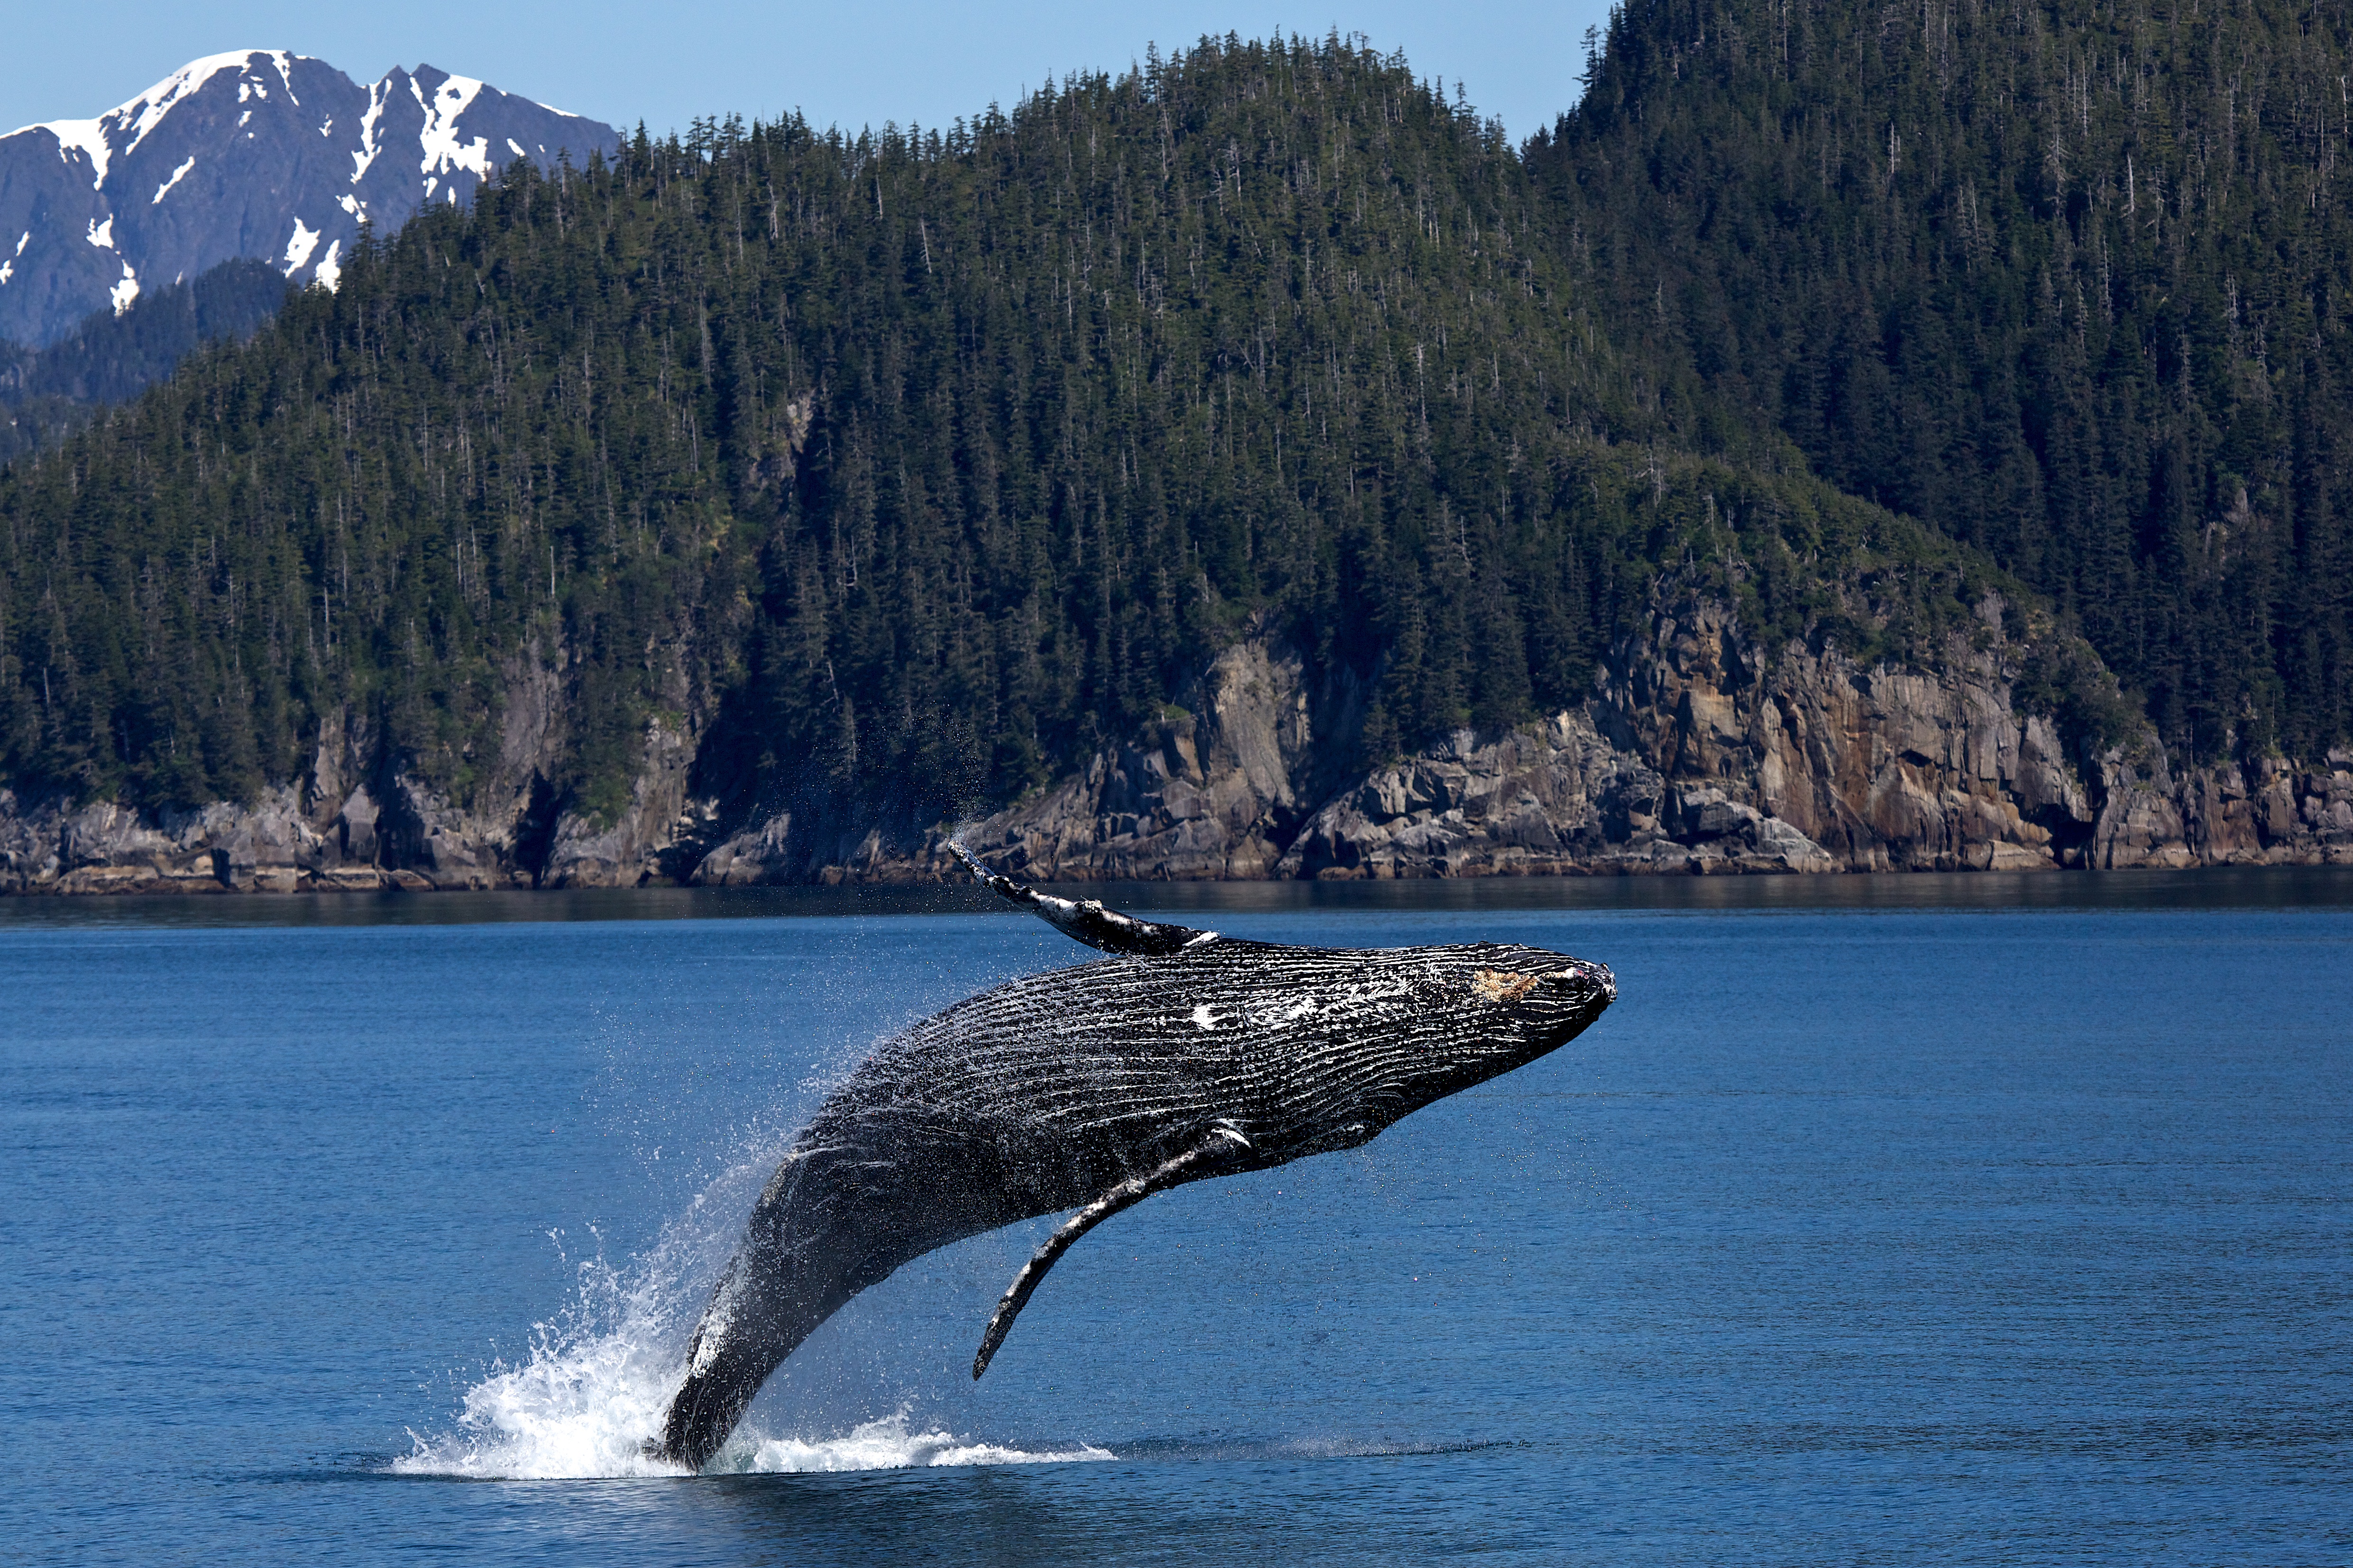 a humpback whale breaches